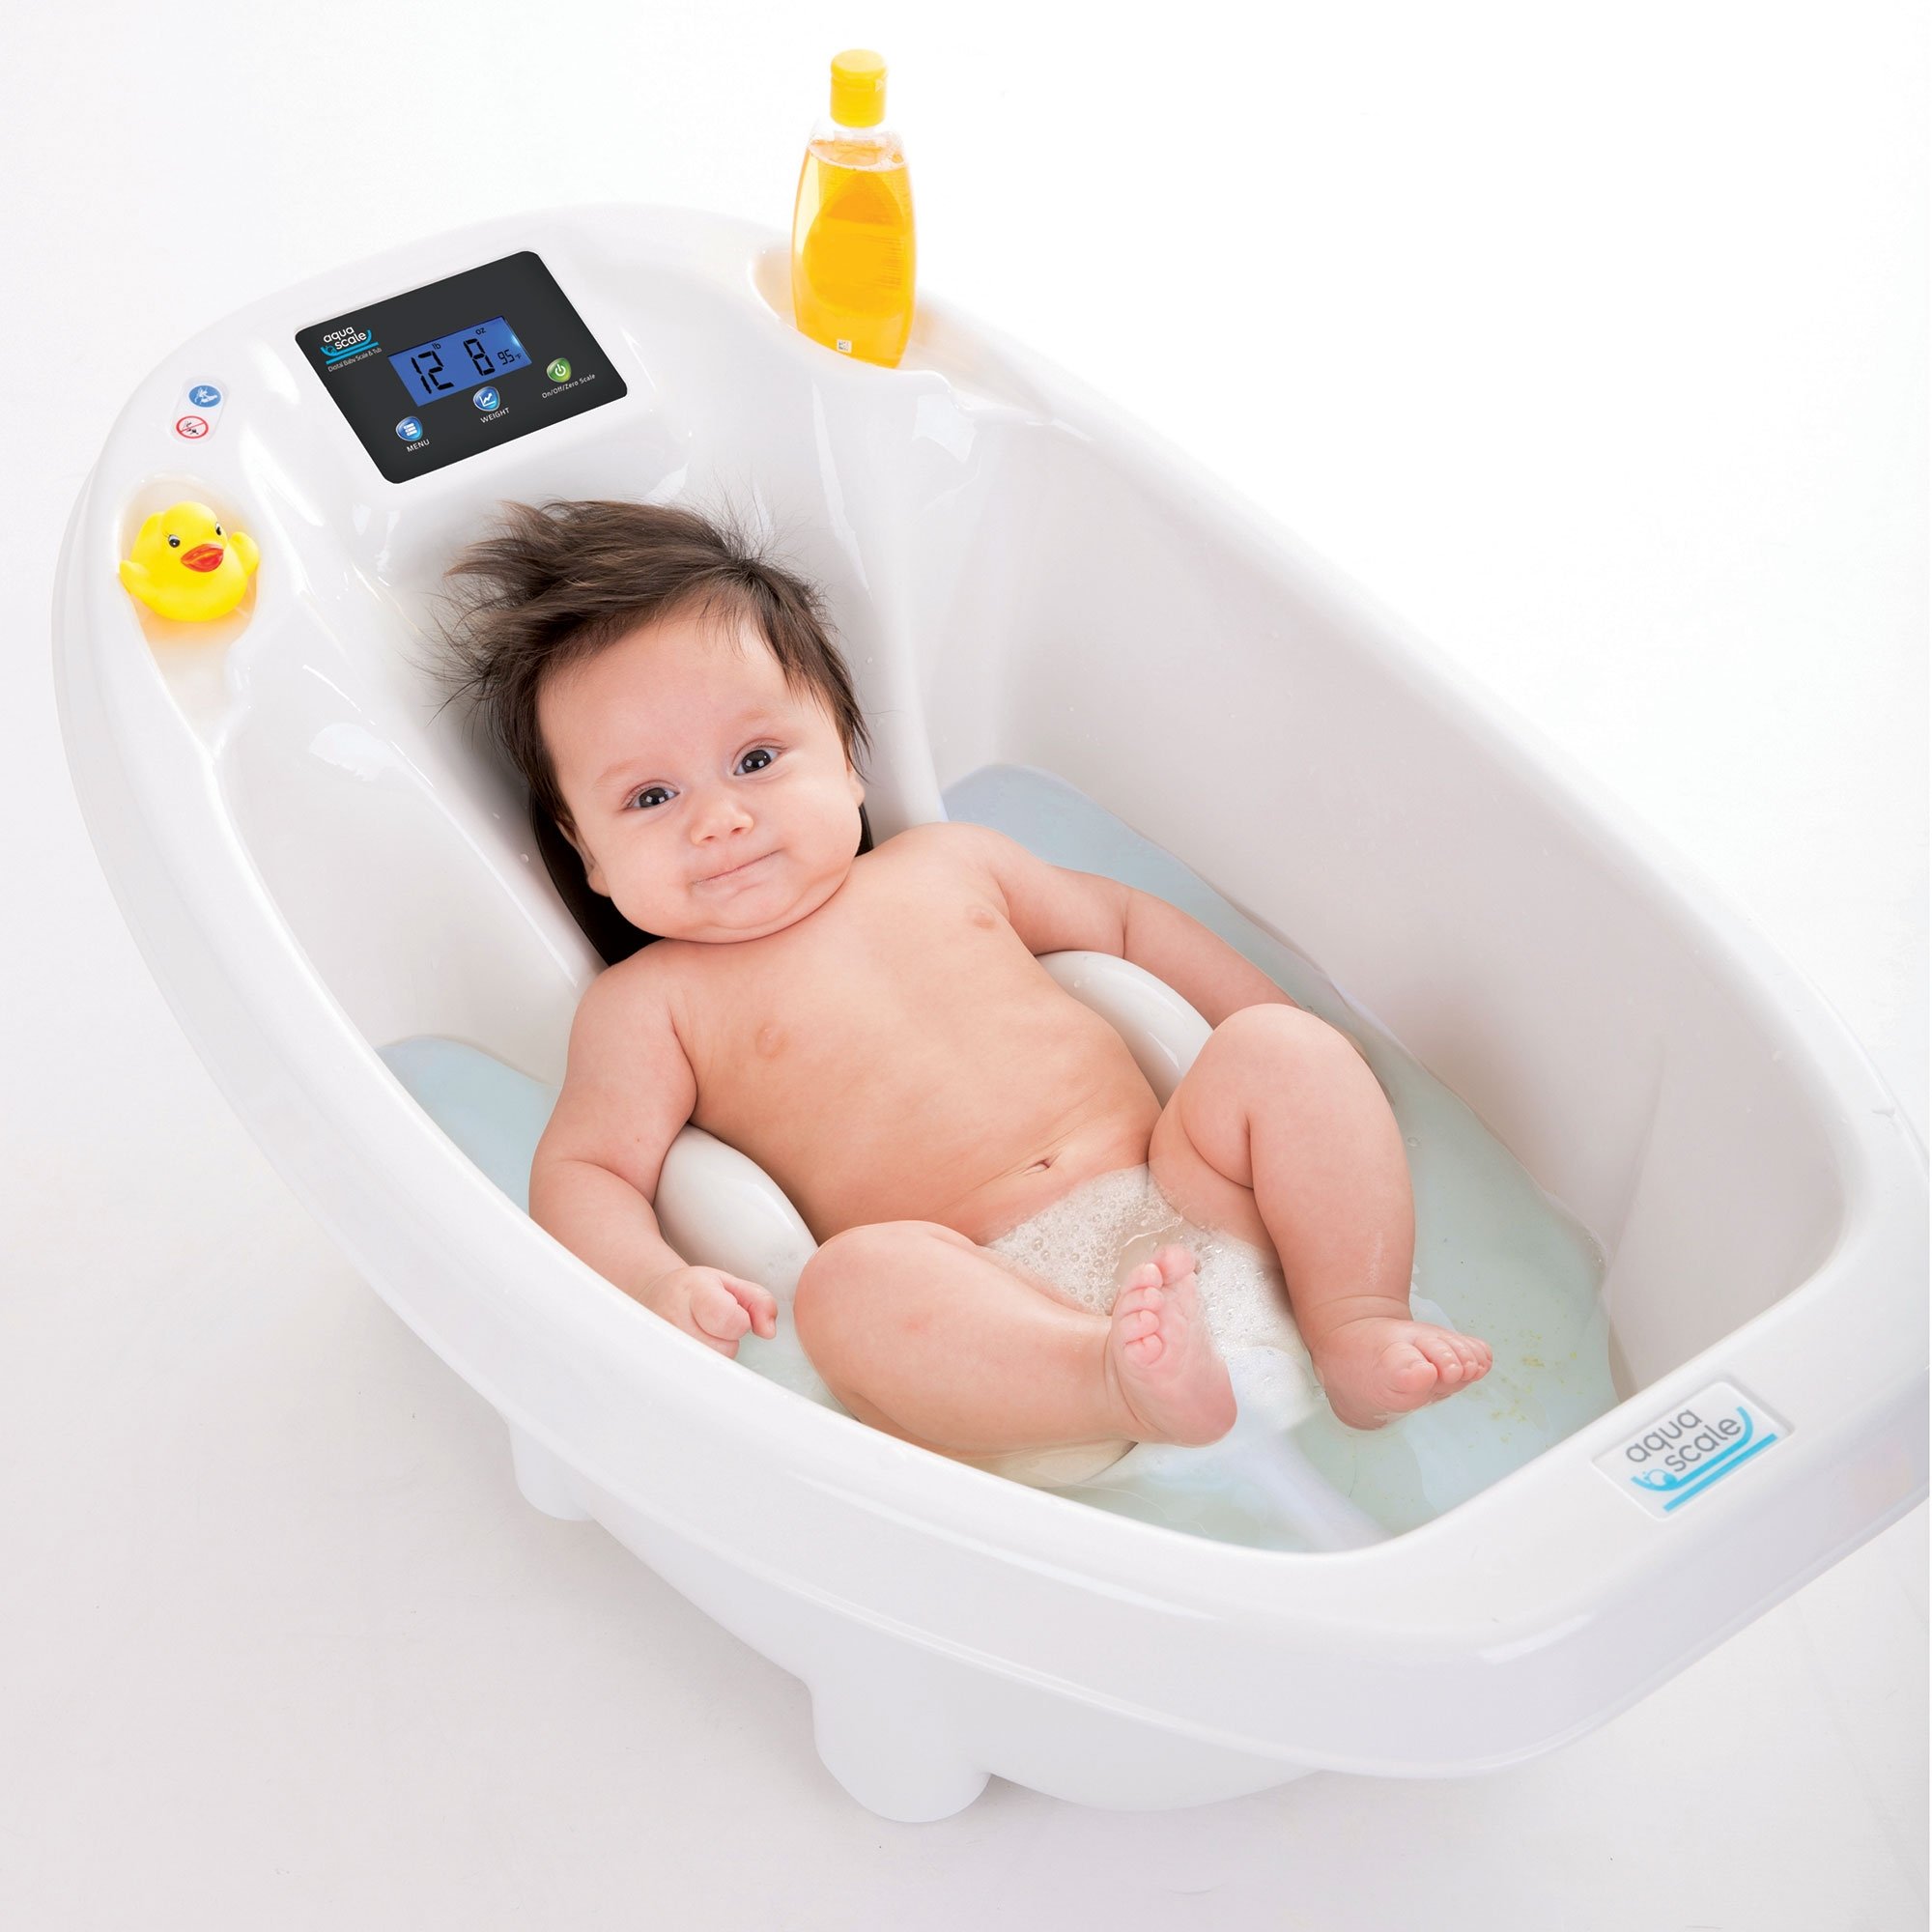 Aquascale 3 in 1 Digital Baby Bath